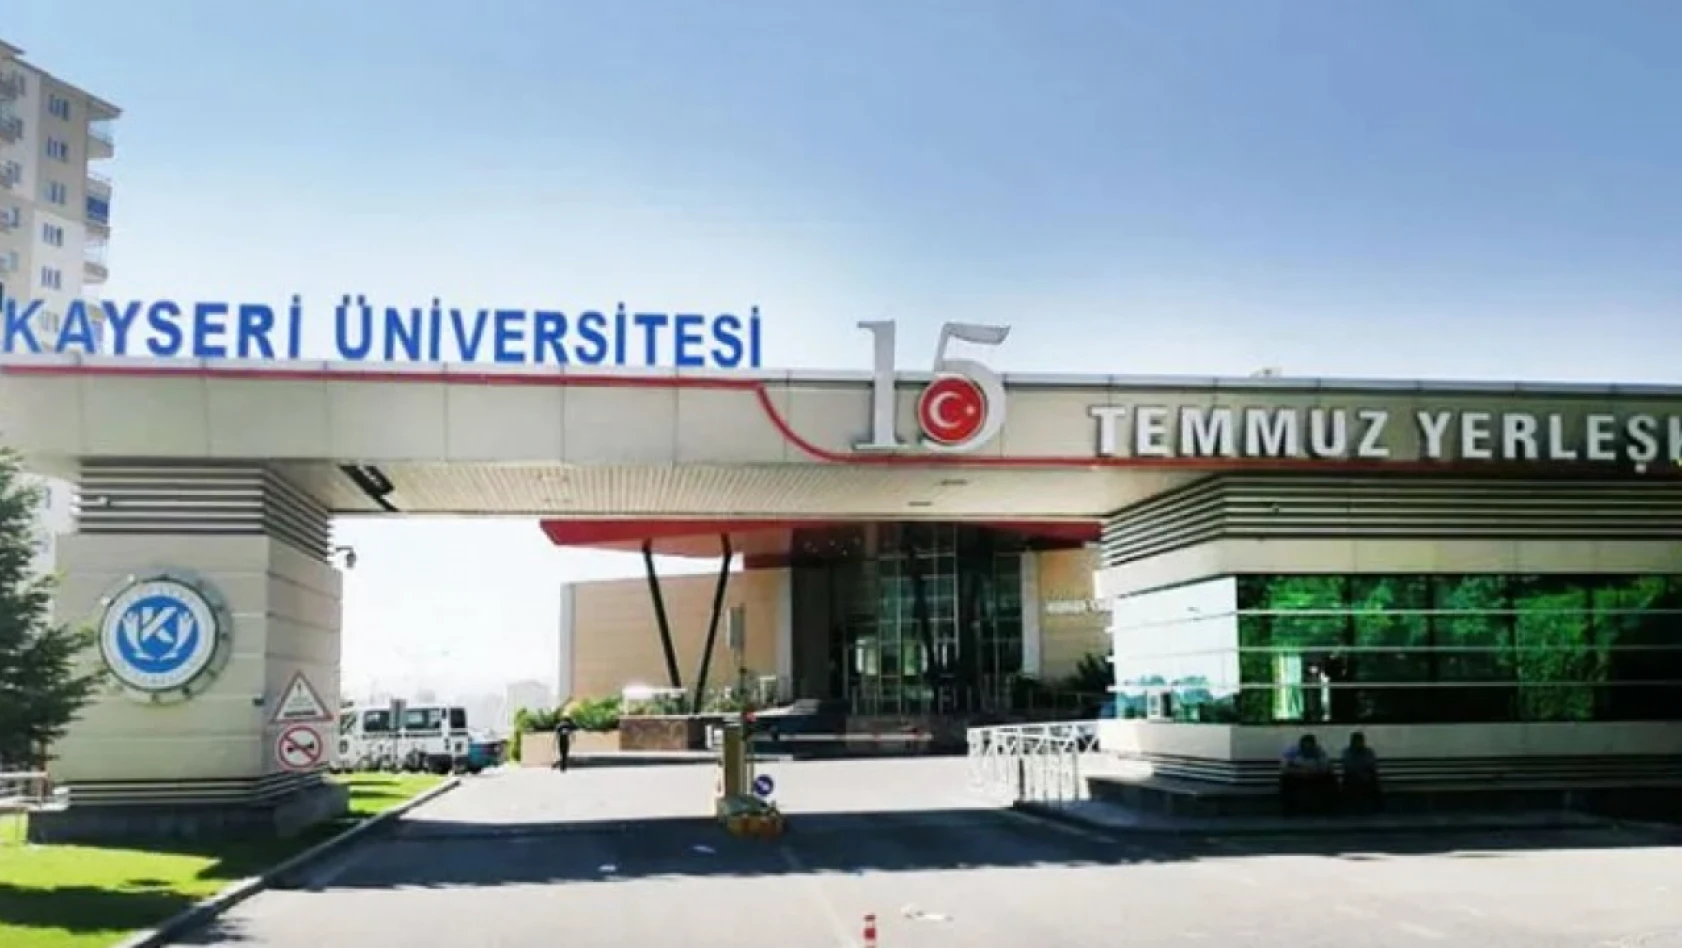 Kayseri Üniversitesi sözleşmeli personel alacak! Lise, önlisans, lisans - Memur alım ilanı